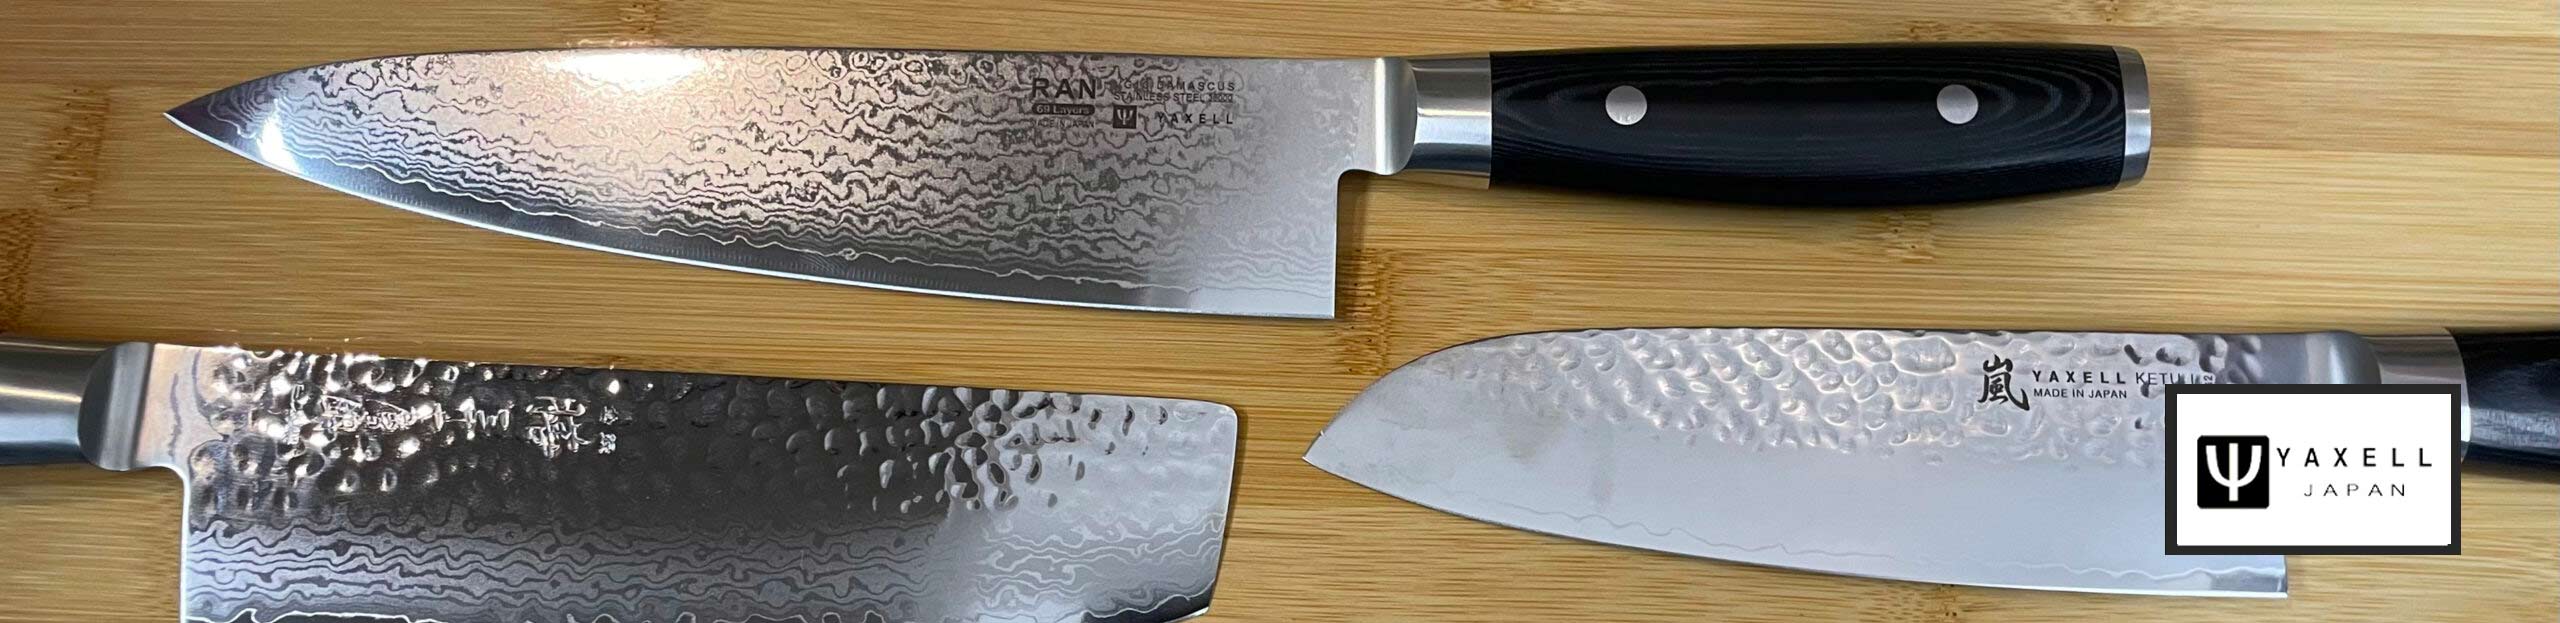 couteau japonais yaxell paris